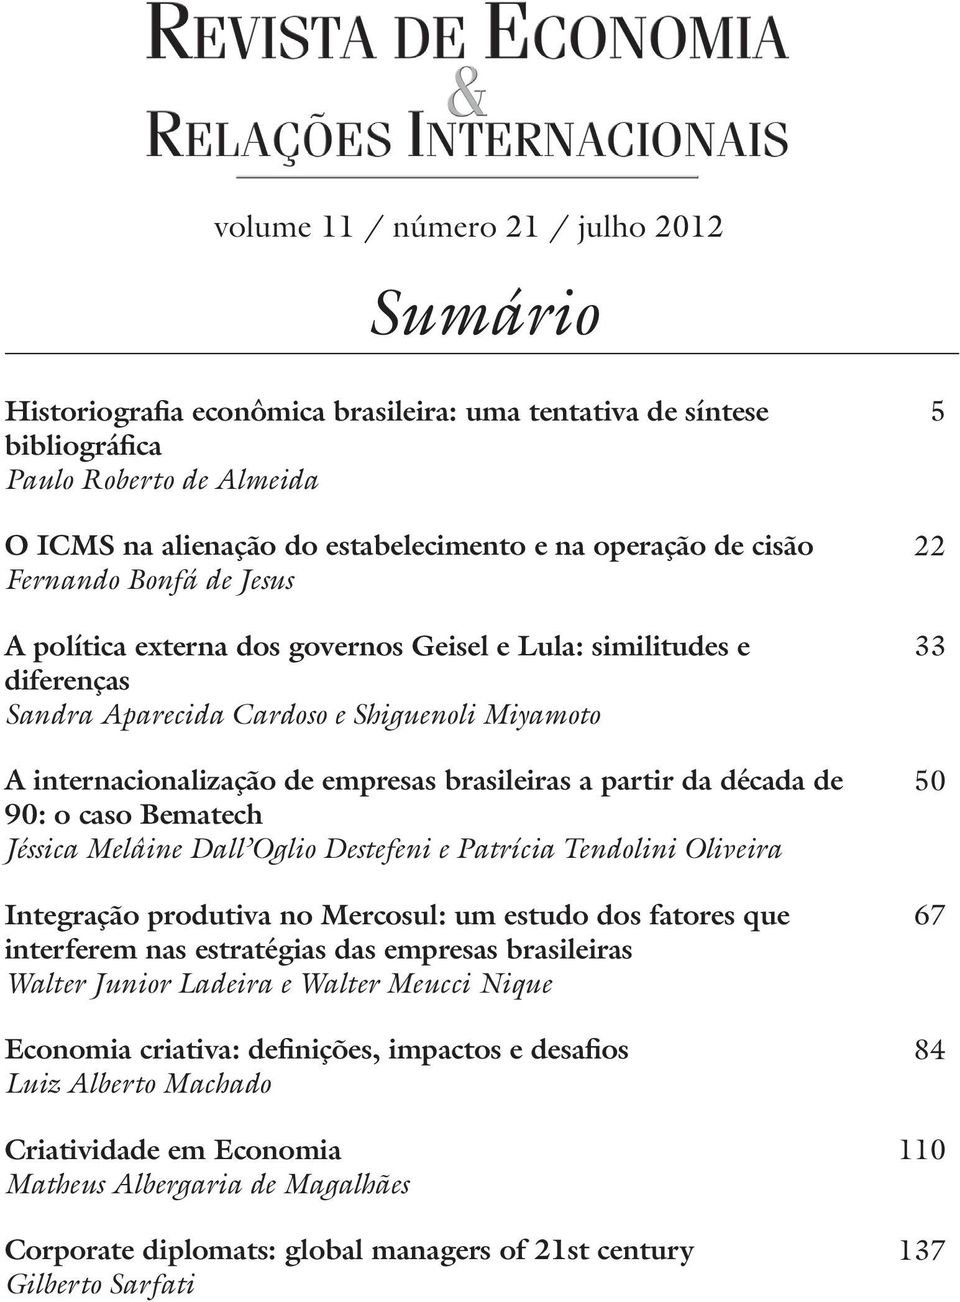 partir da década de 90: o caso Bematech Jéssica Melâine Dall Oglio Destefeni e Patrícia Tendolini Oliveira Integração produtiva no Mercosul: um estudo dos fatores que interferem nas estratégias das